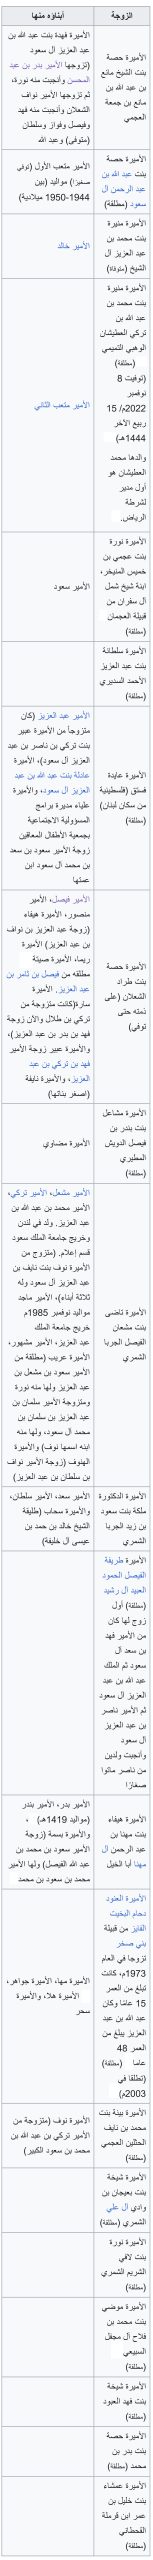  أسرة عبدالله بن عبدالعزيز آل سعود -  المصدر: wikipedia